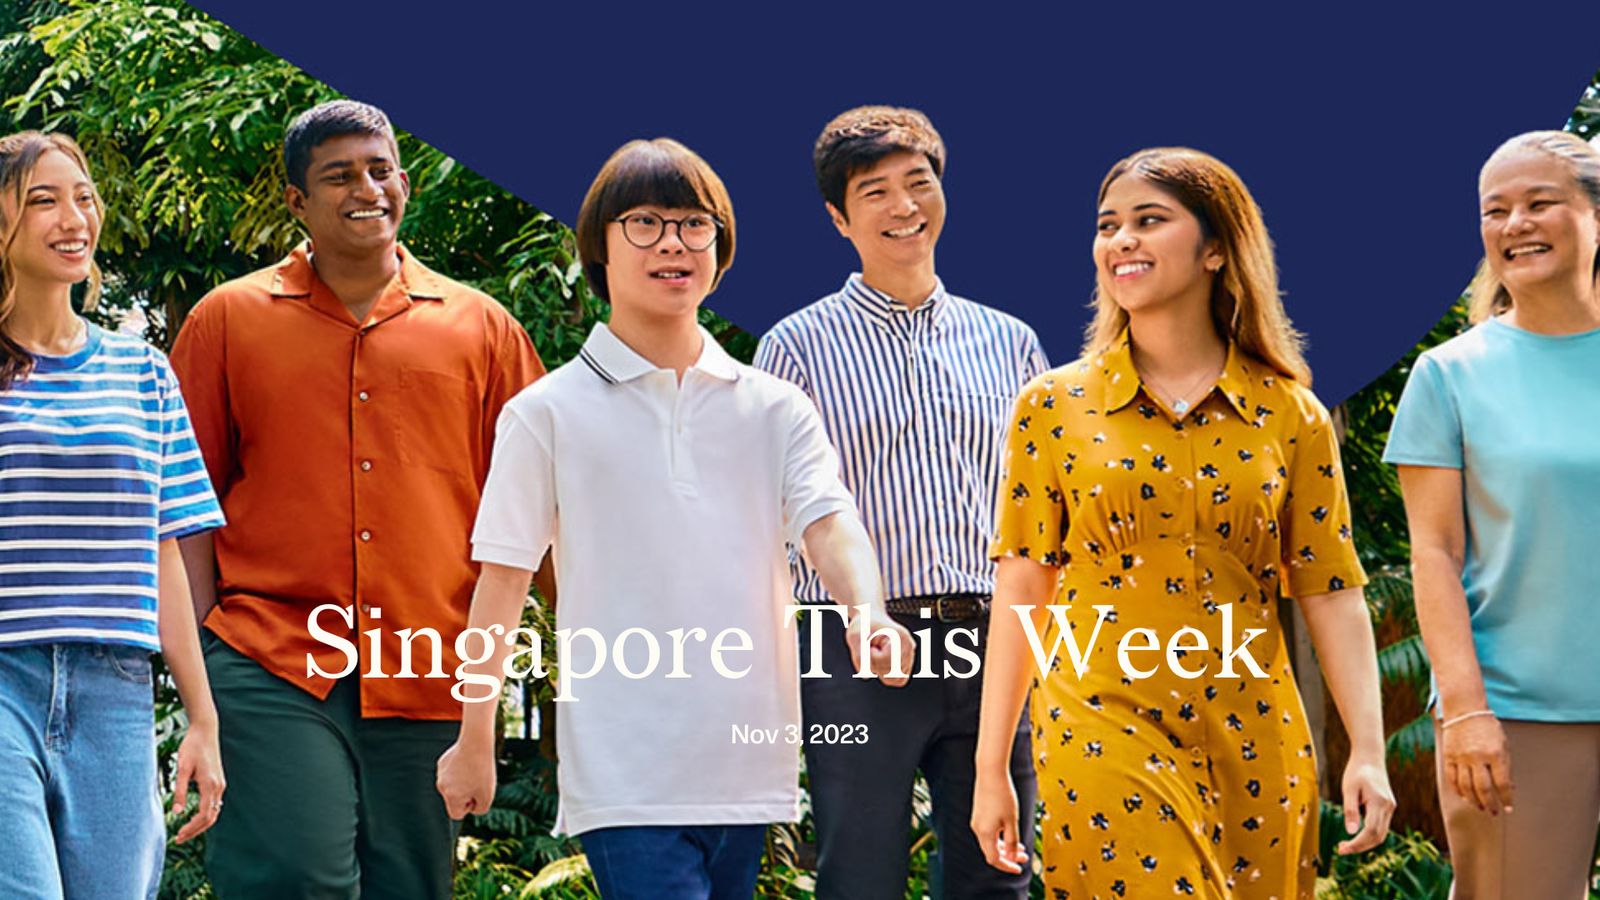 Singapore This Week